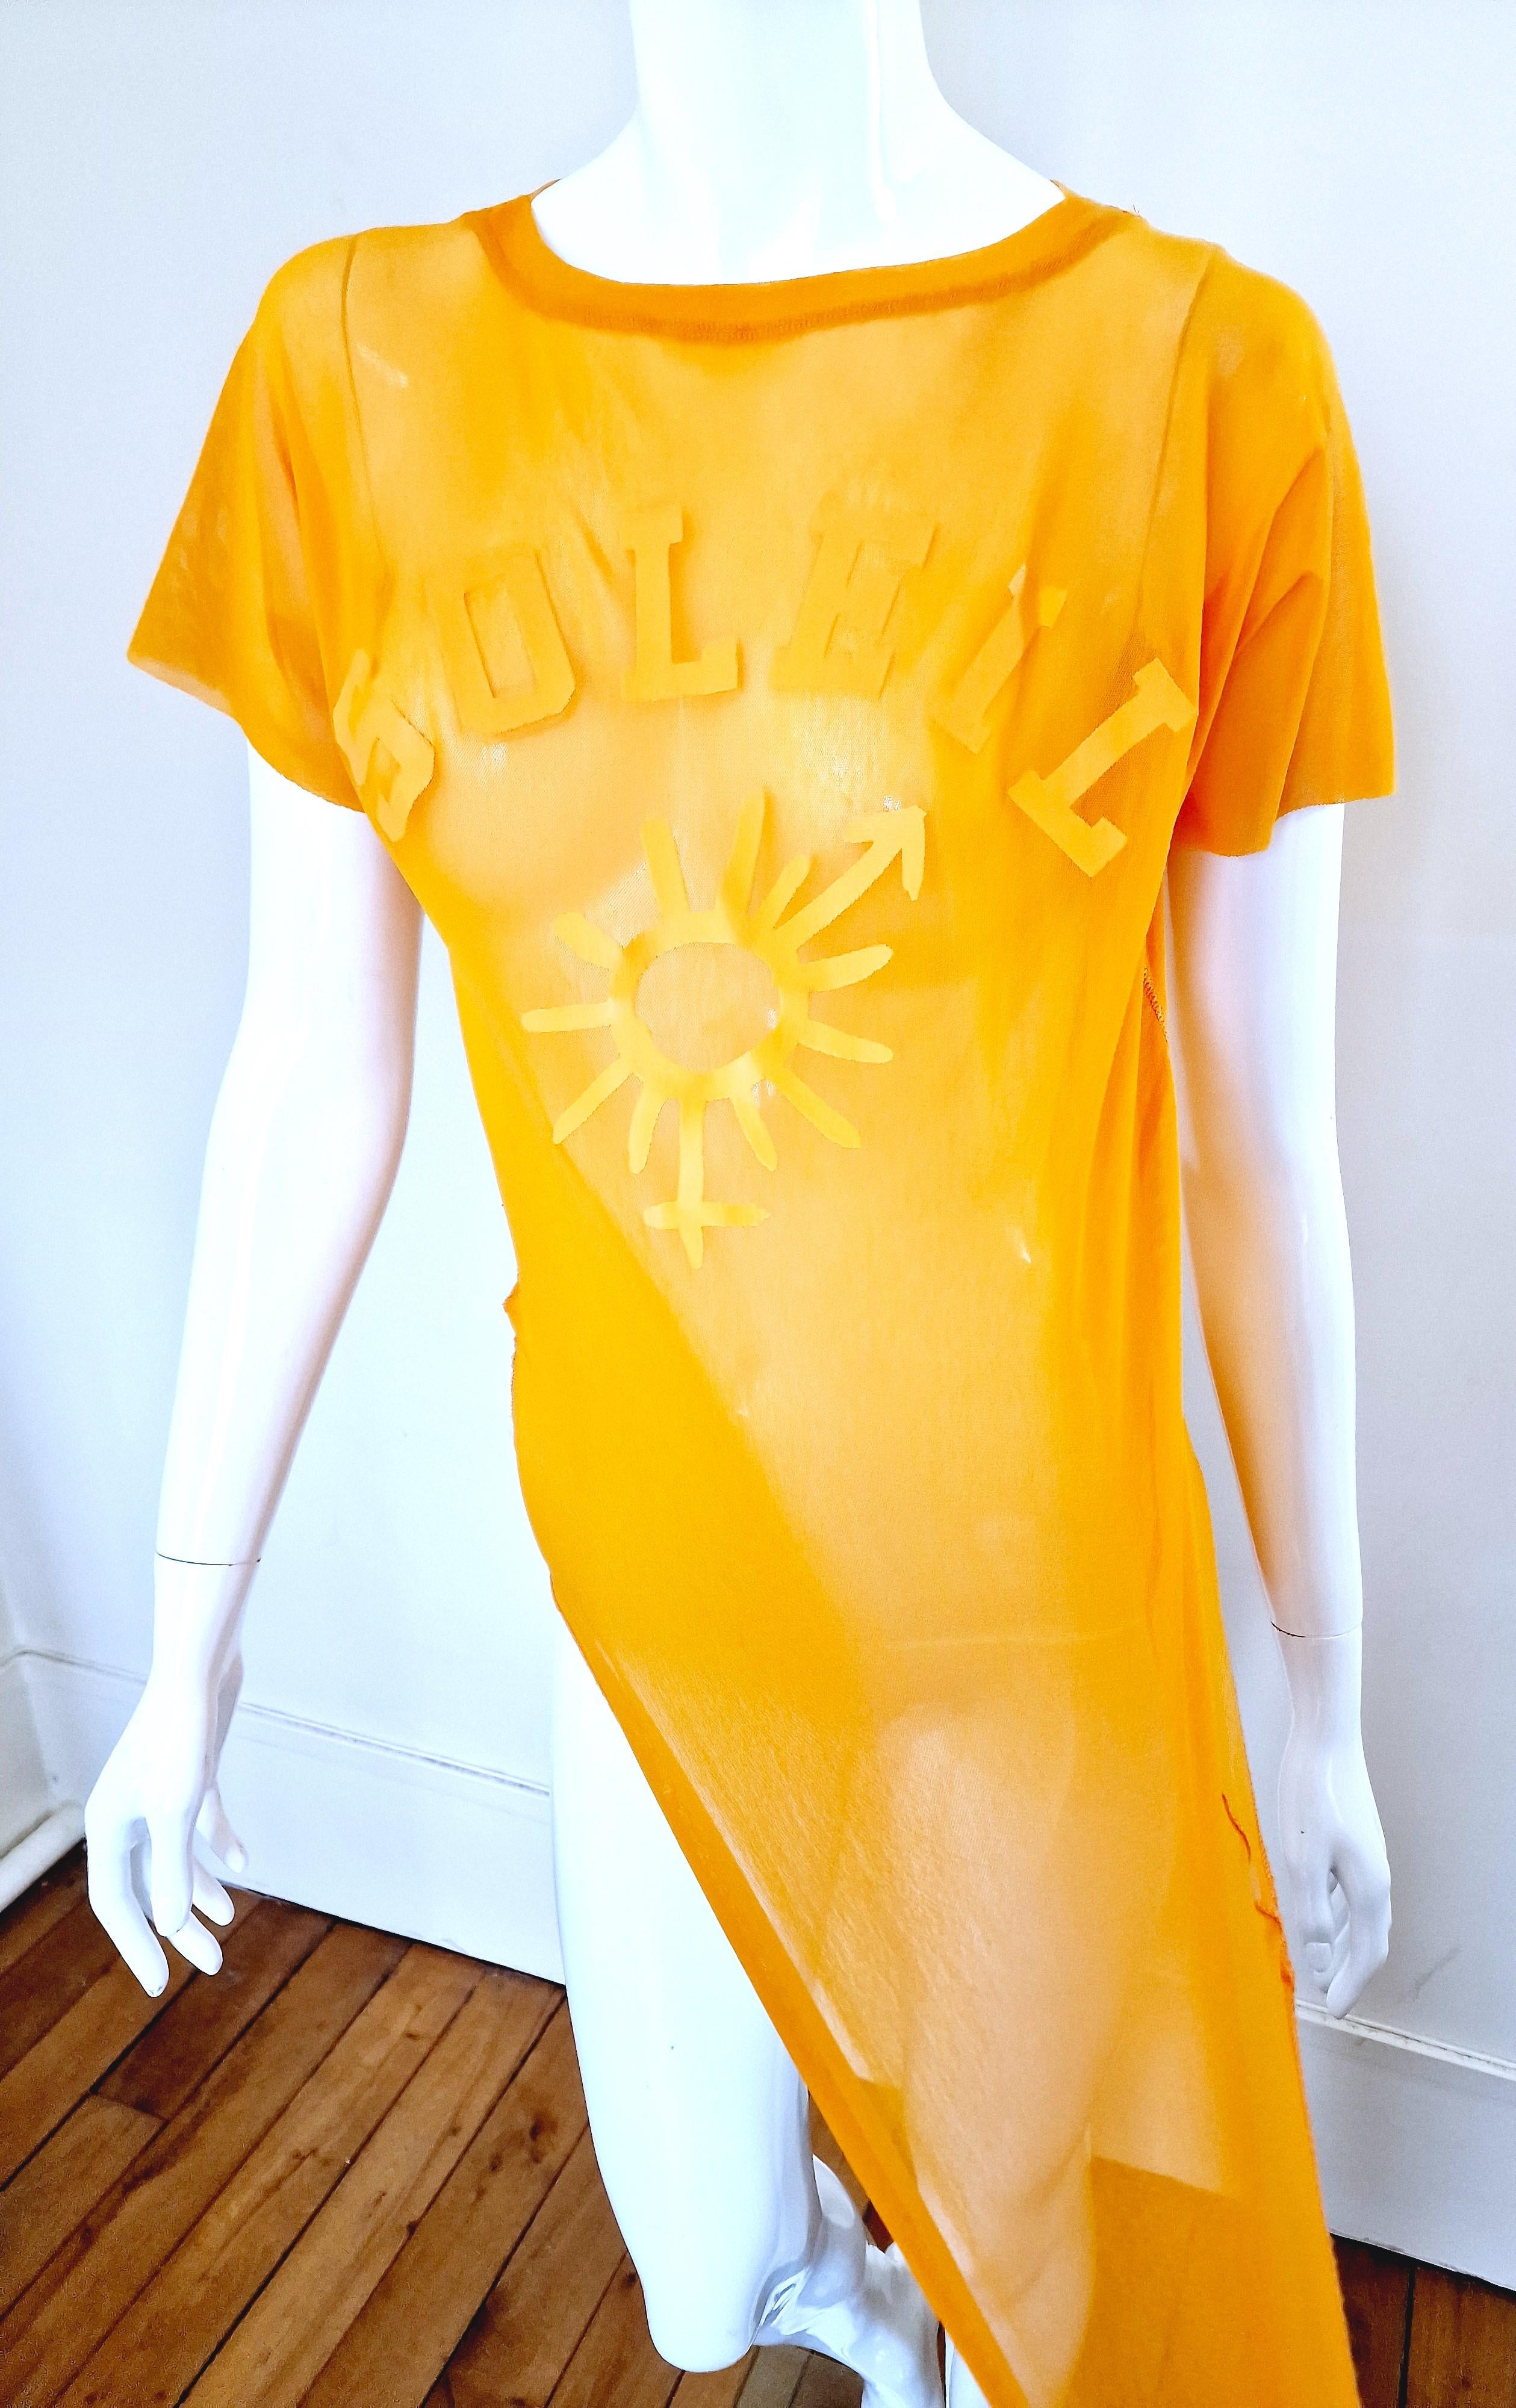 Men's Jean Paul Gaultier Sex Sybmol Soleil Orange Logo Text Men Shirt Large XL Top For Sale